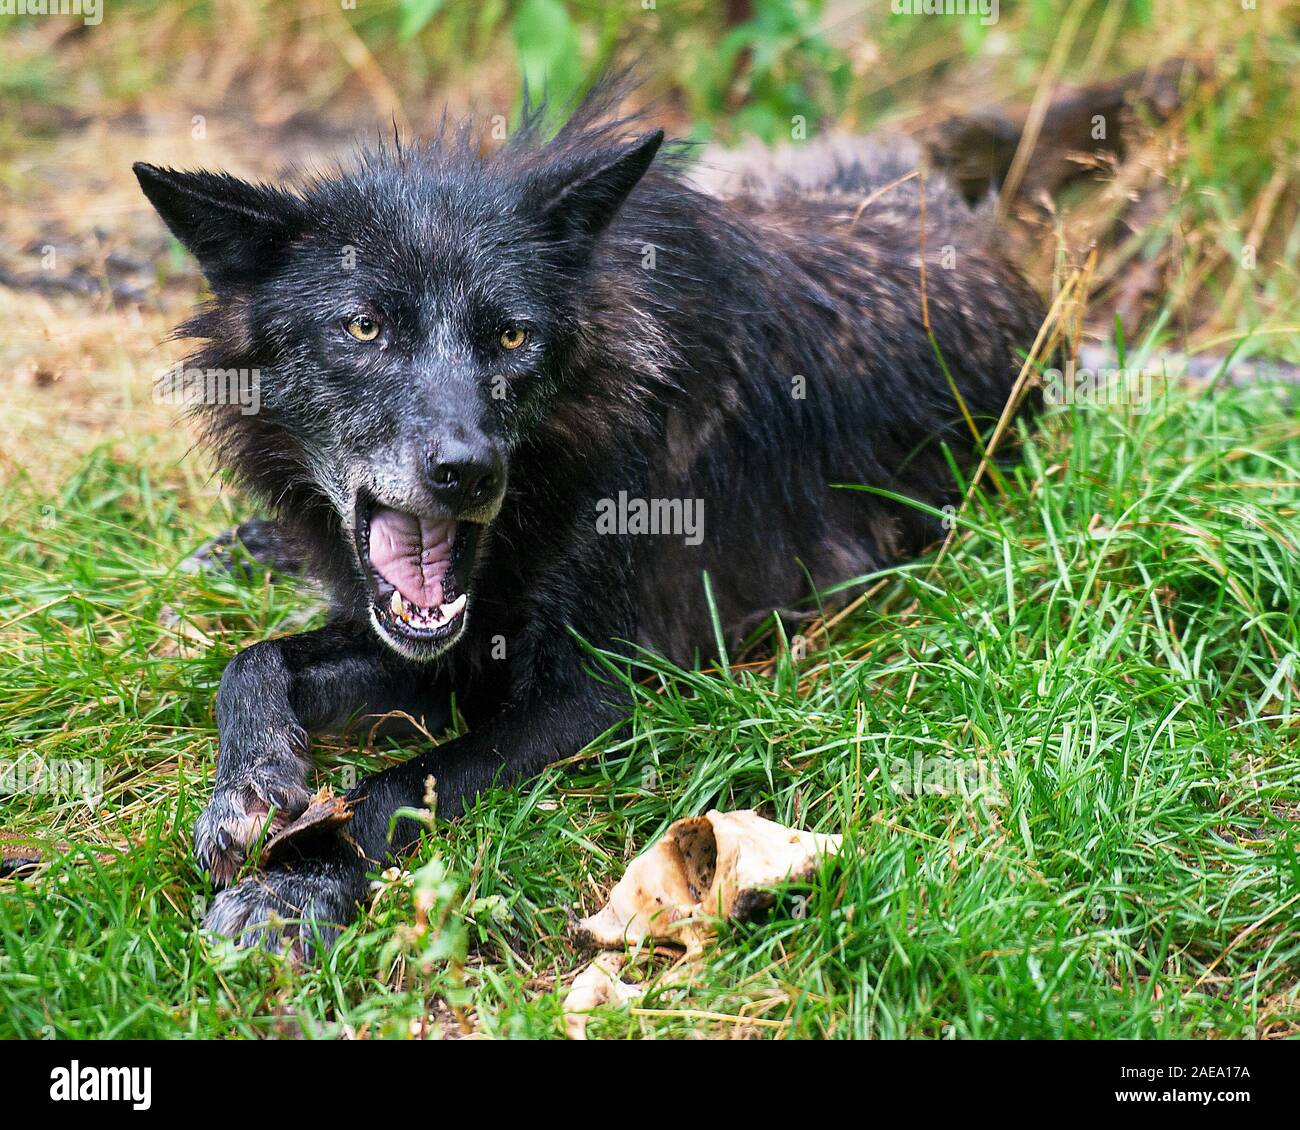 Animali Wolf close-up vista di profilo con la bocca aperta che mostra i denti con un wet pelliccia dopo una pioggia nella foresta visualizzazione nero argento pelliccia, Foto Stock